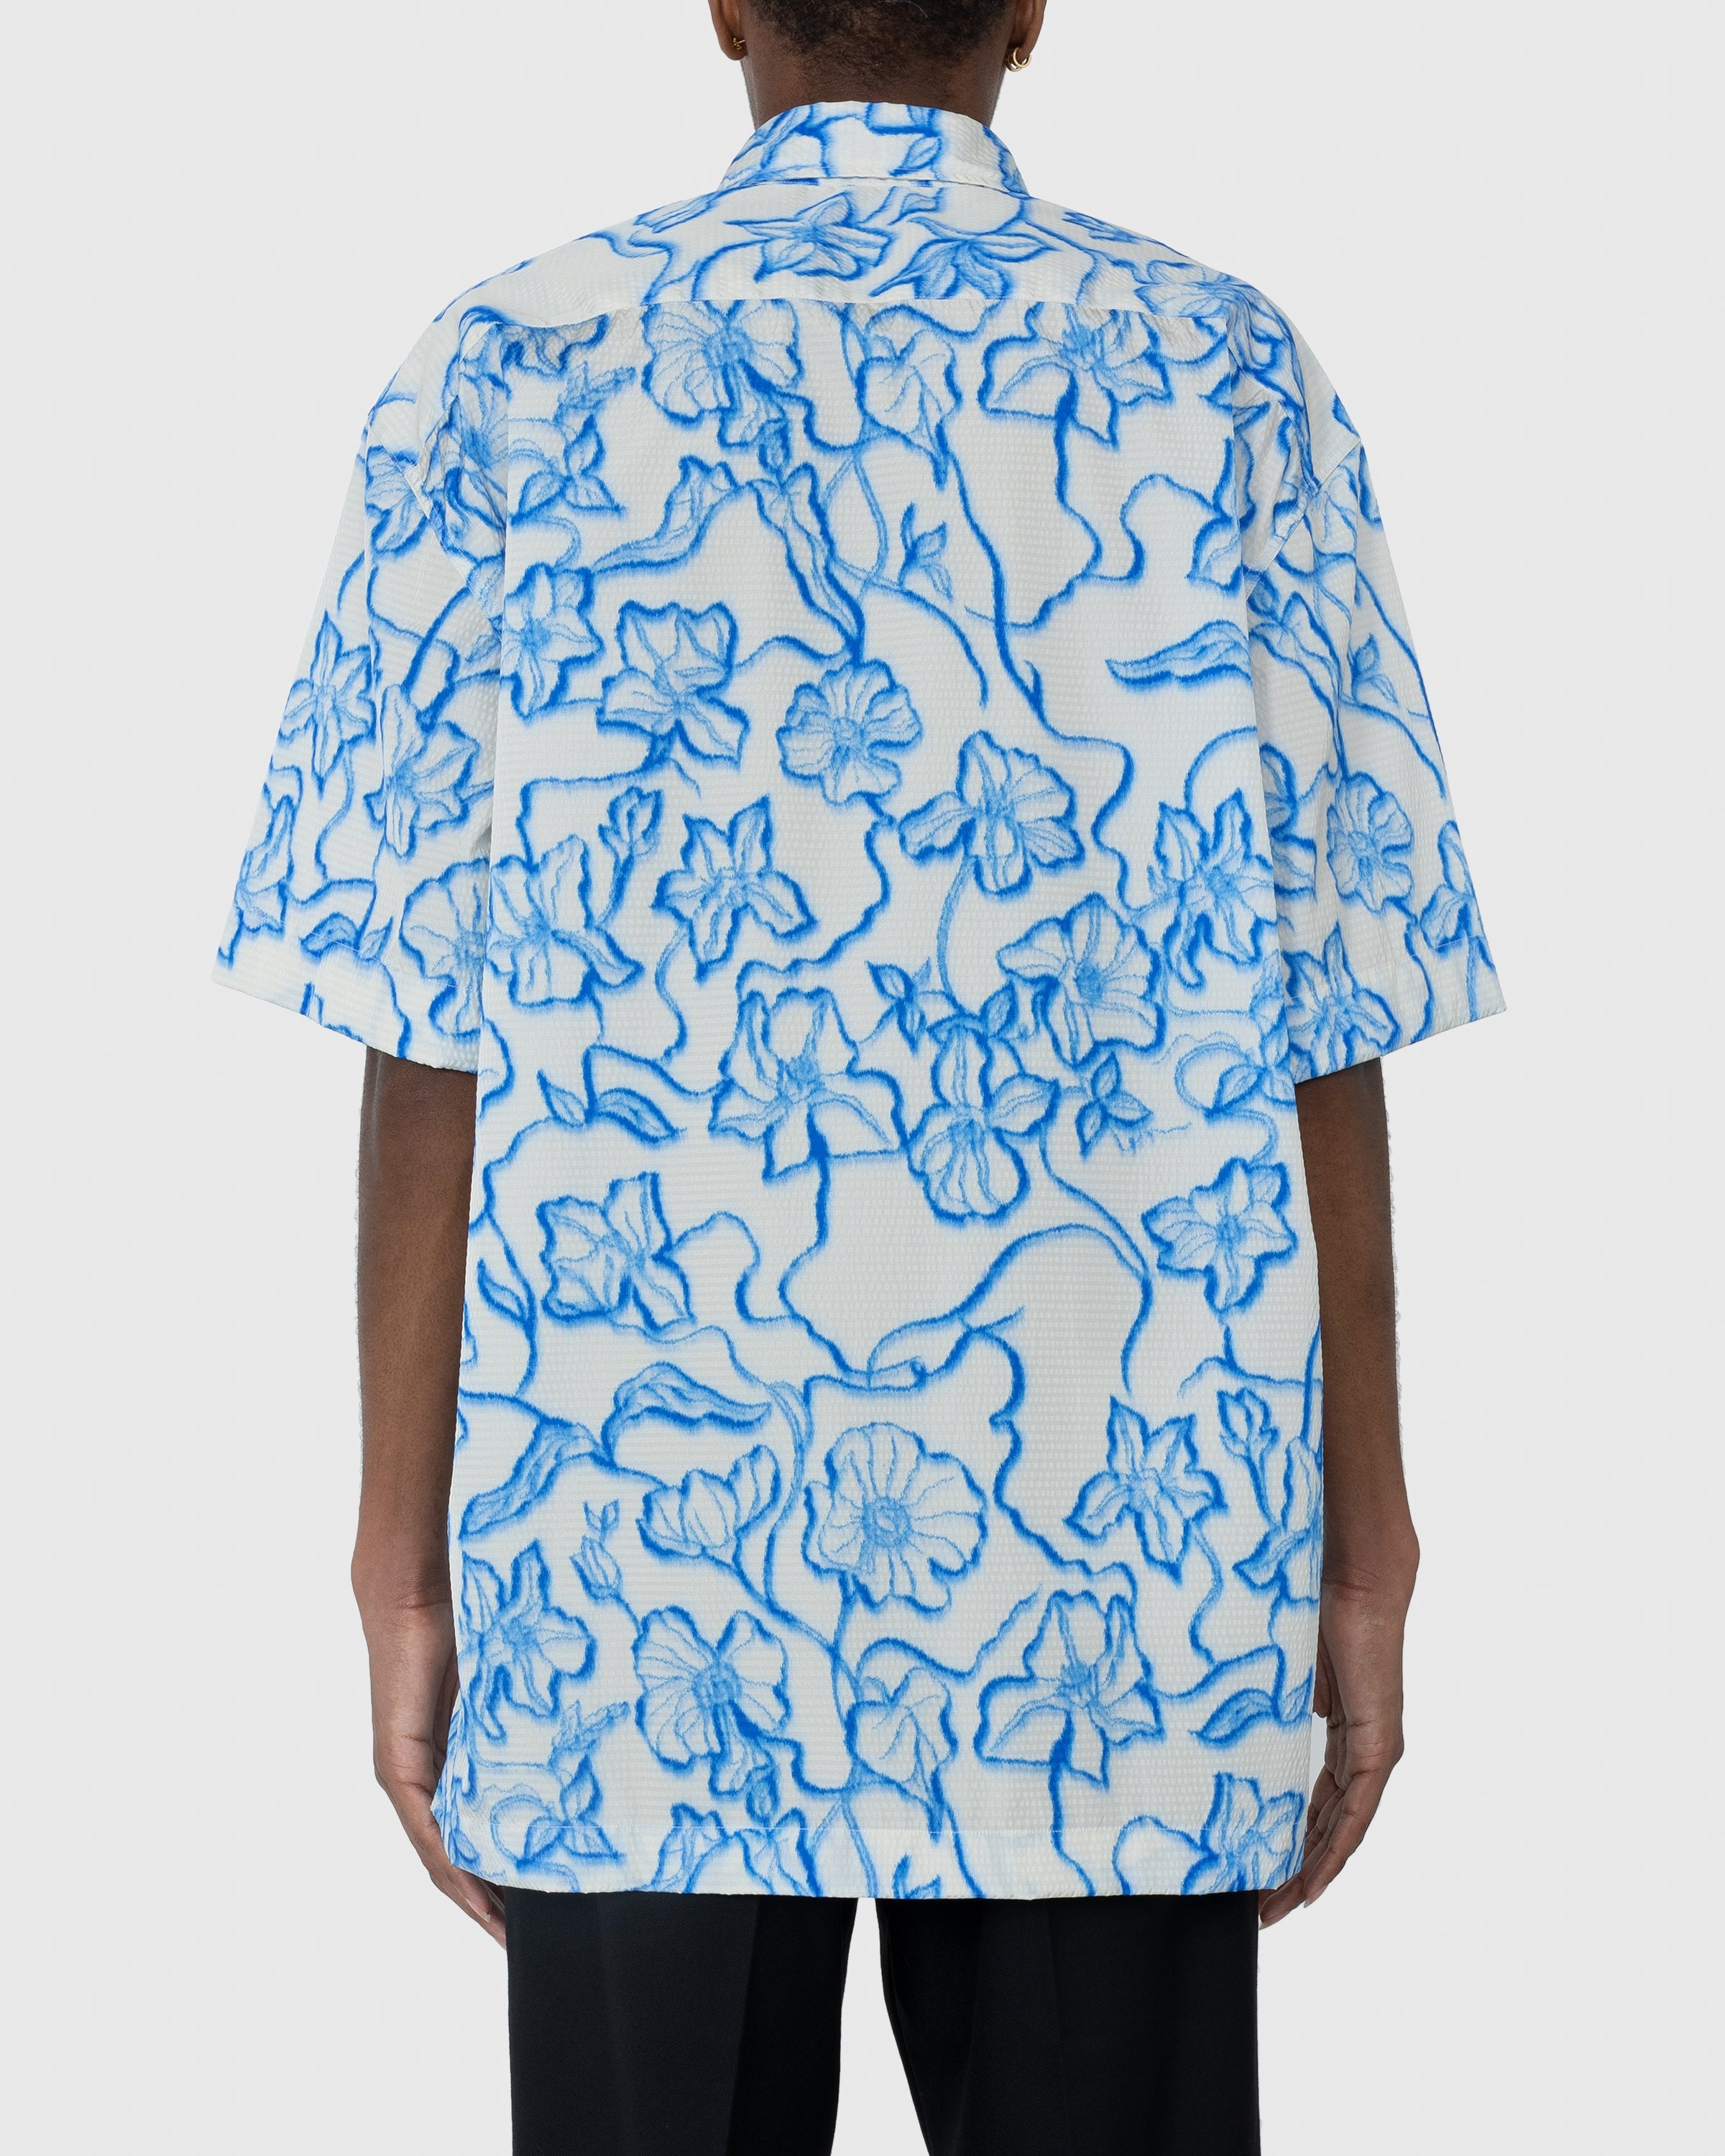 Dries van Noten – Cassidye Shirt Blue - Shortsleeve Shirts - Blue - Image 4